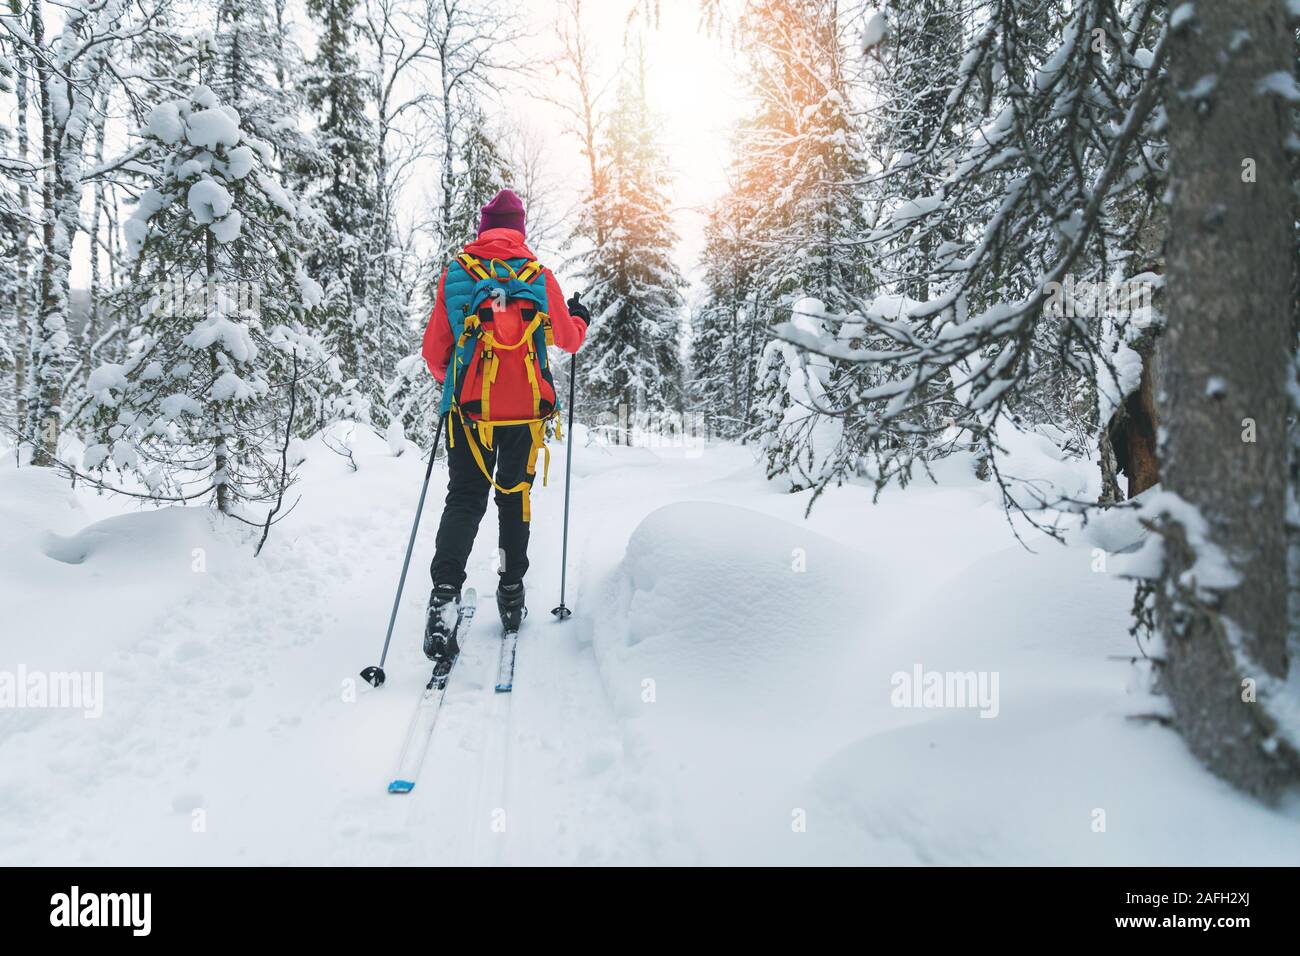 Esquí de fondo - Mujer con esquís en un bosque nevado de invierno trail. Yllas, Laponia, Finlandia Foto de stock